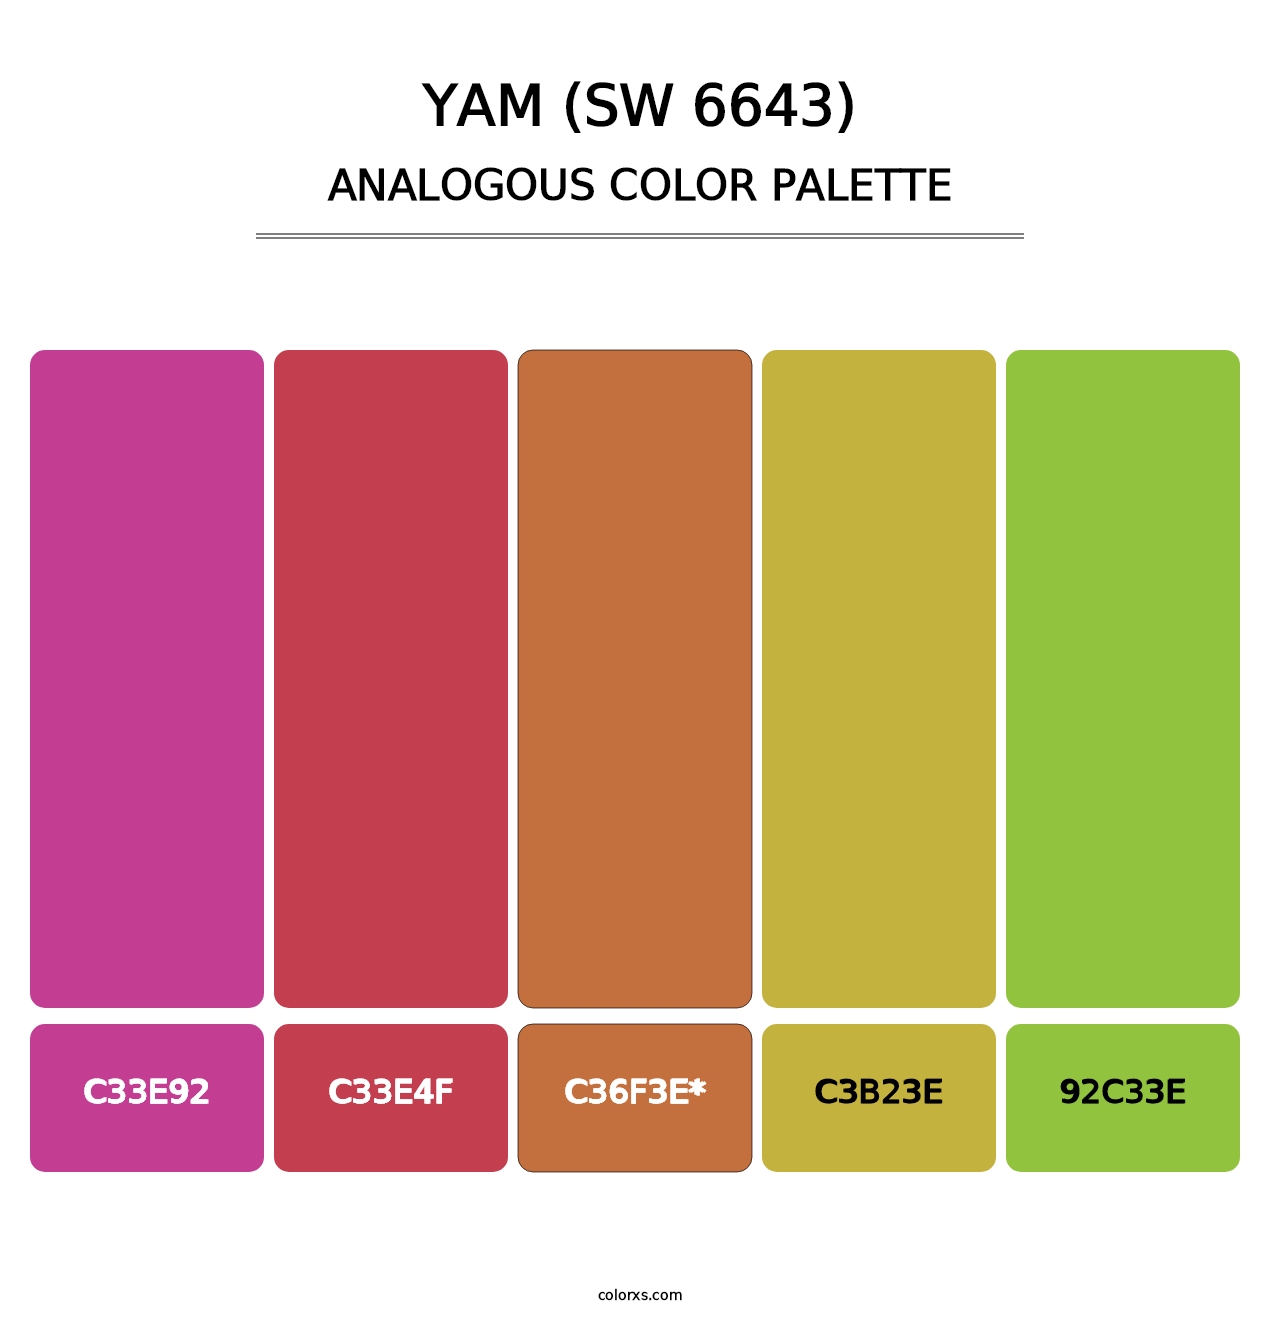 Yam (SW 6643) - Analogous Color Palette